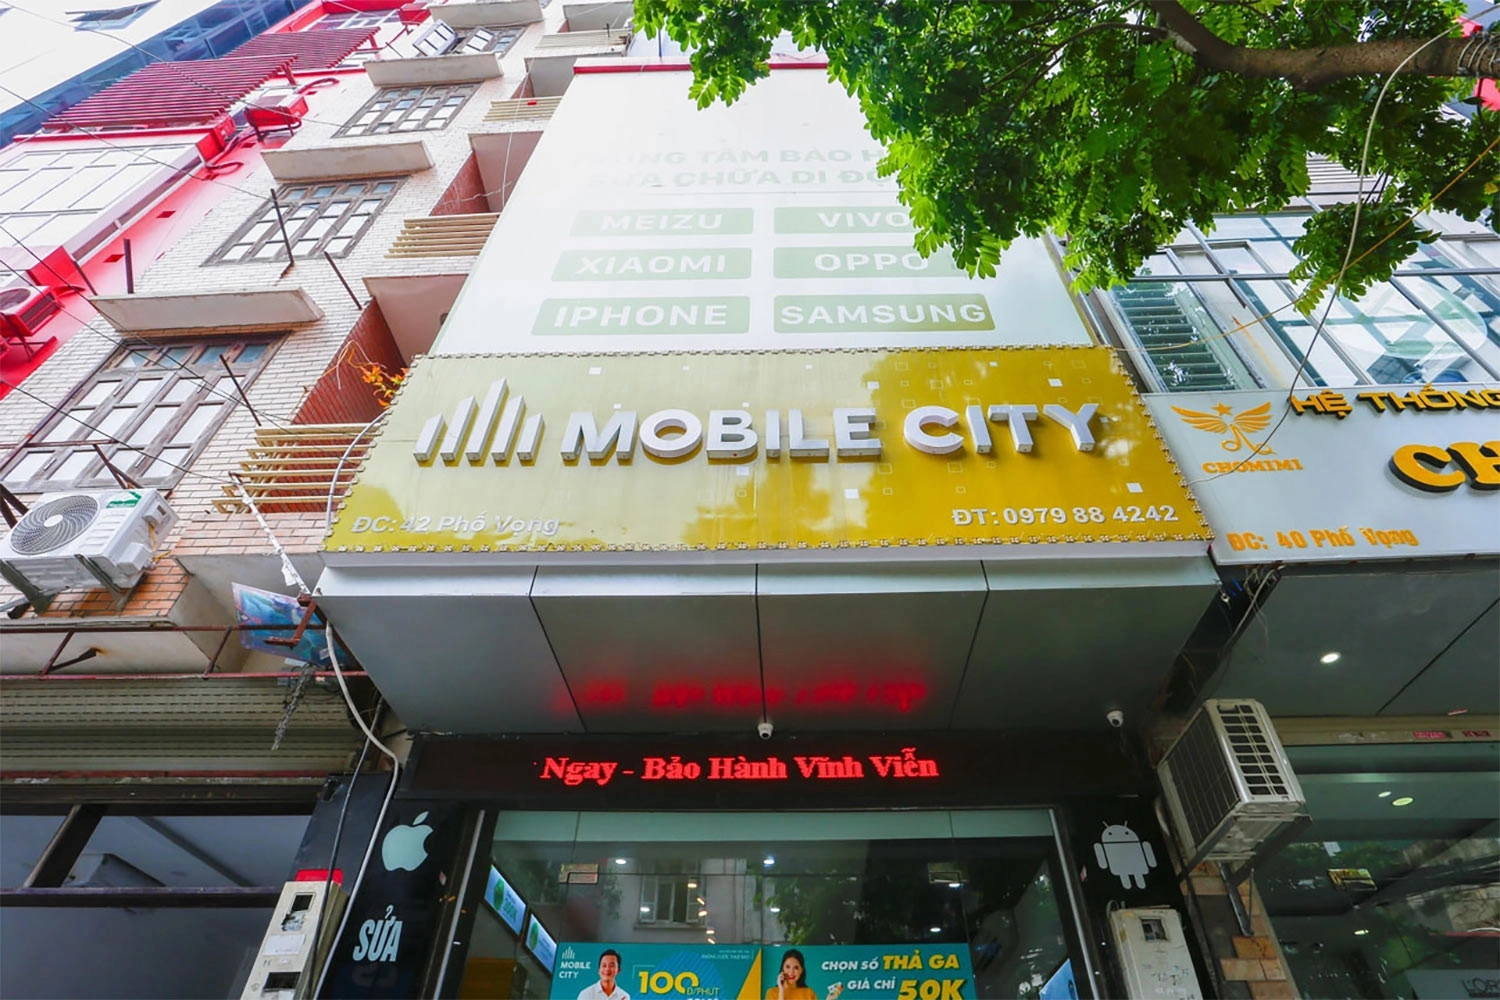 Thay màn hình iPhone 11, Địa chỉ thay màn hình iPhone 11 tại Hà Nội, Đà Nẵng, Tp.HCM